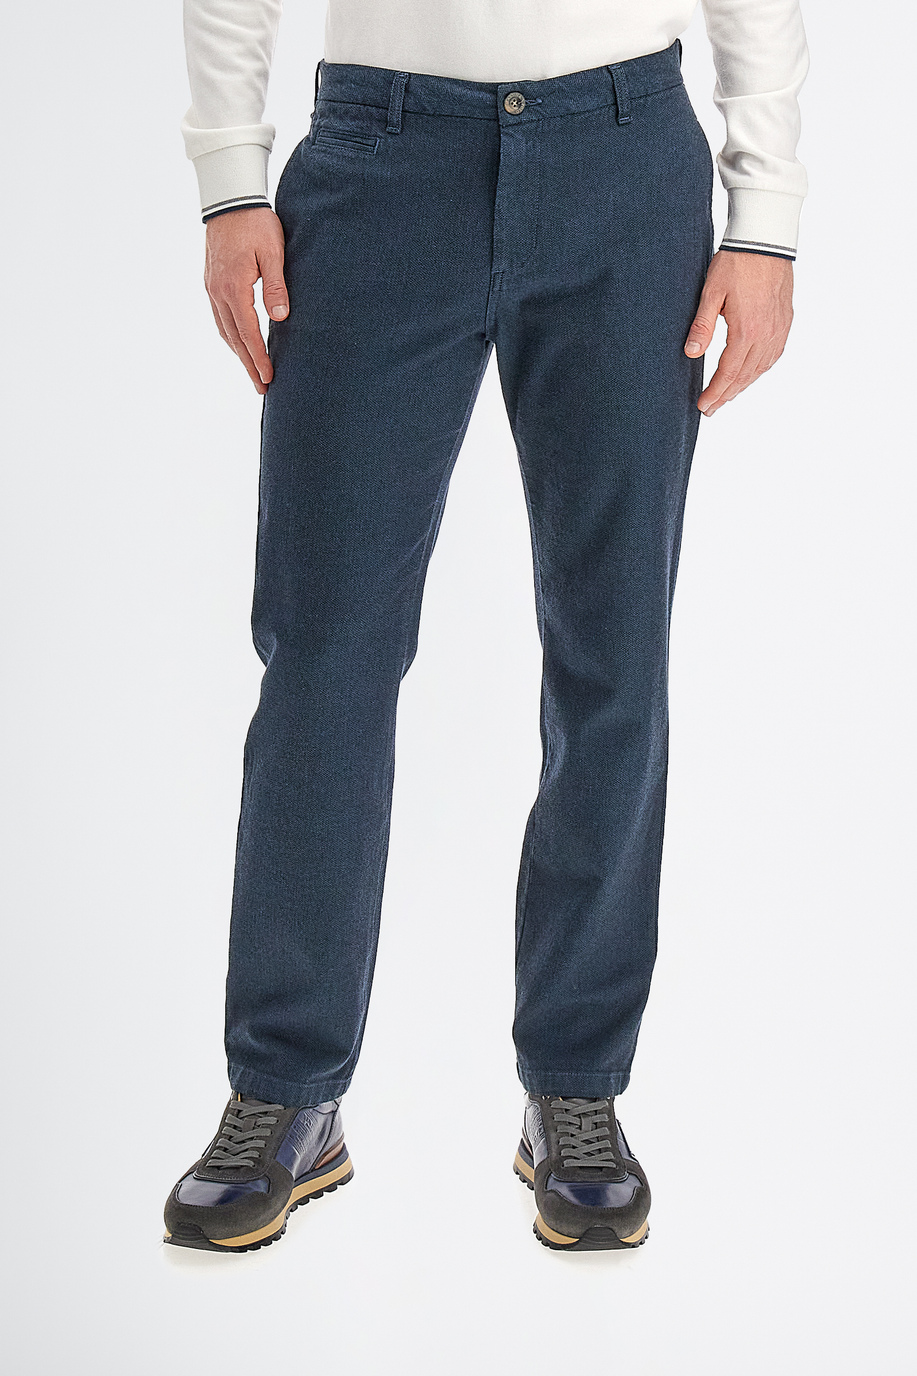 Pantalone da uomo modello 5 tasche in cotone regular fit - Look eleganti per lui | La Martina - Official Online Shop